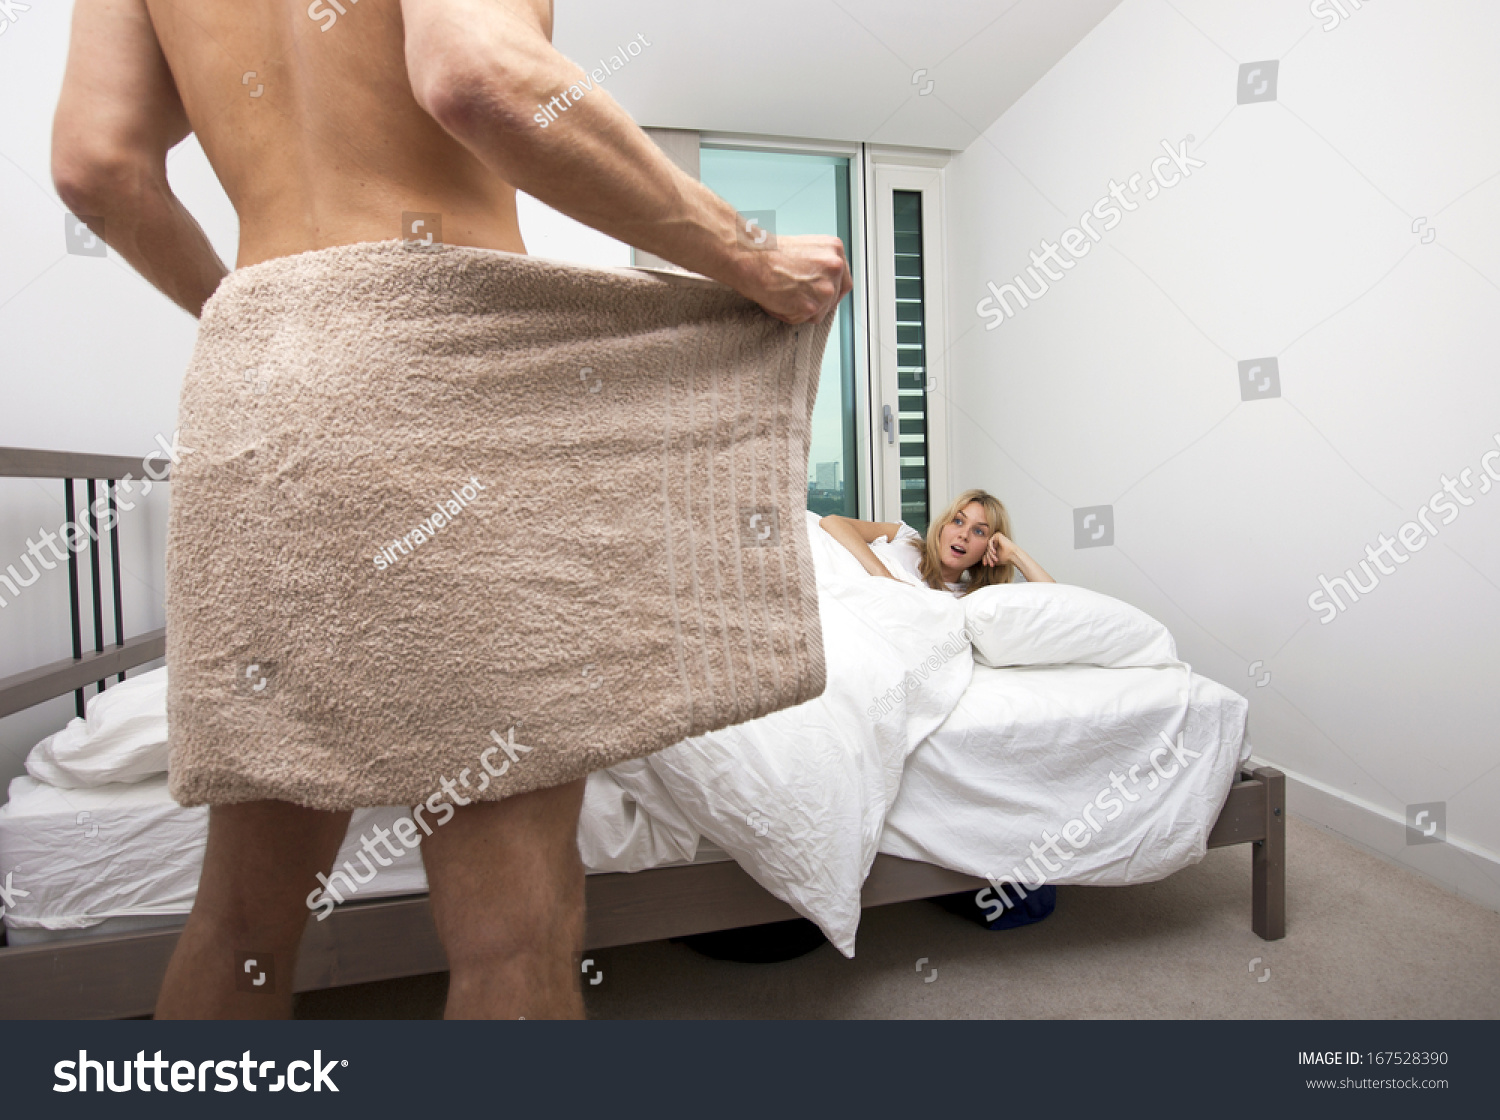 Men With Women In Bed Nude